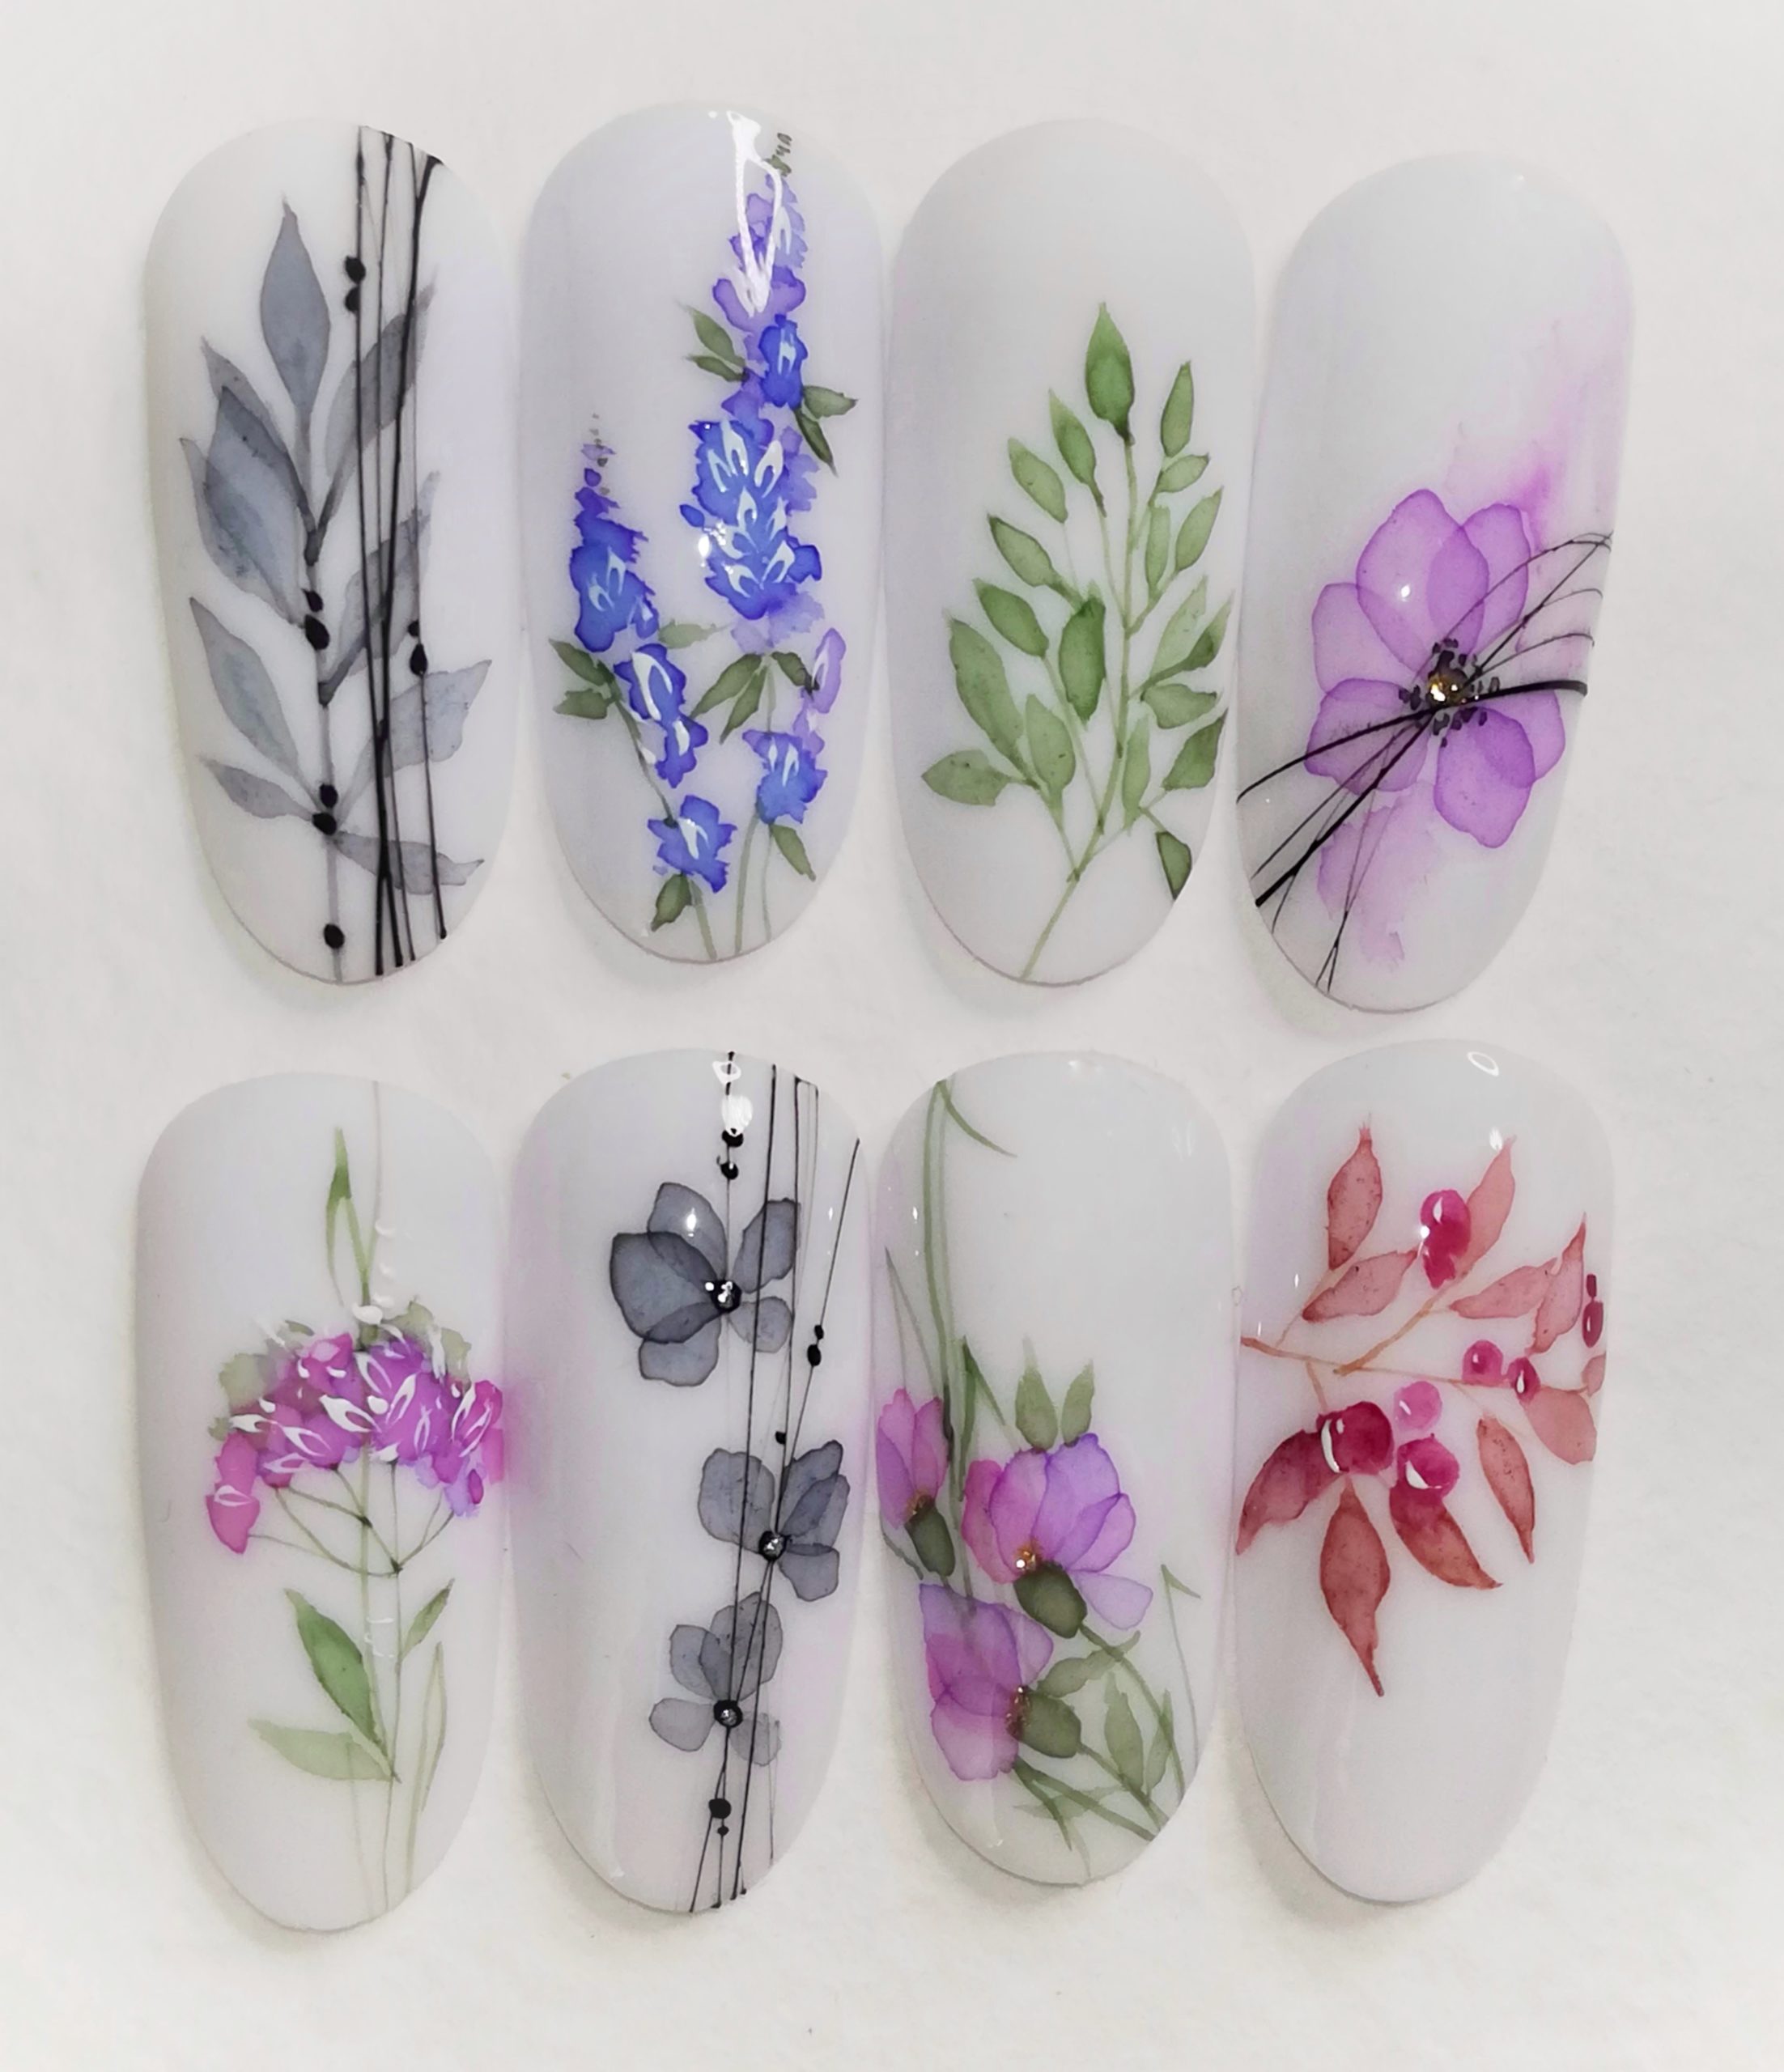 Роспись на ногтях: материалы, пошаговые инструкции, идеи дизайнов • журнал nails